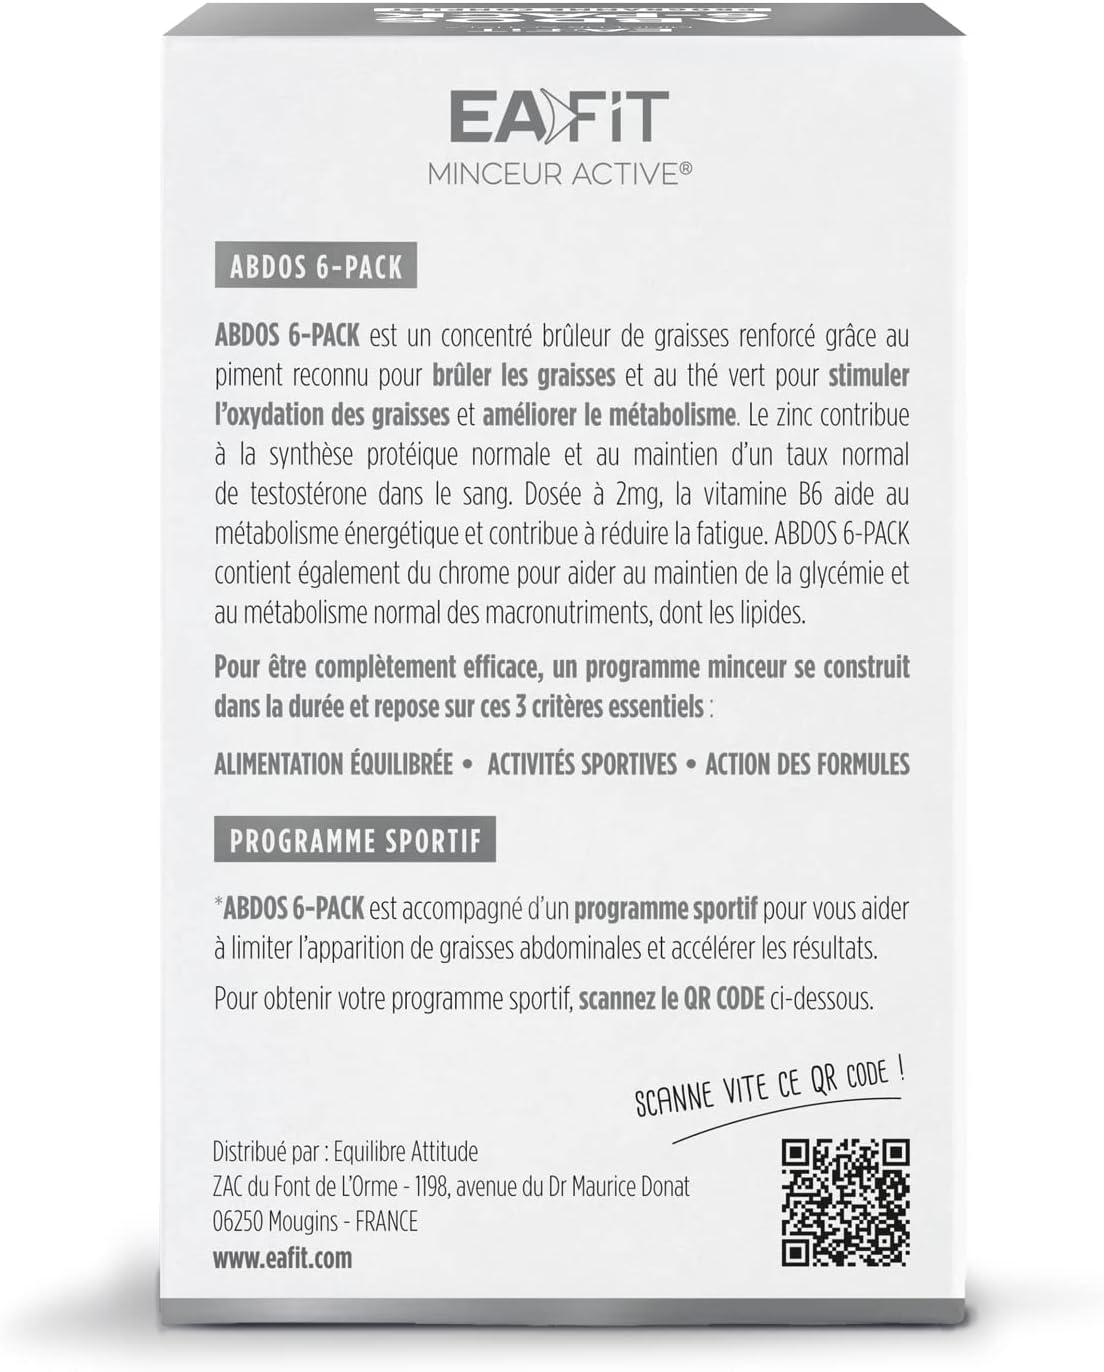 Eafit ABDOS 6-PACK - Brûle les graisses - Limite lapparition des graisses abdominales - Actif breveté - Programme Complet - Cure 1 mois - 120 comprimés